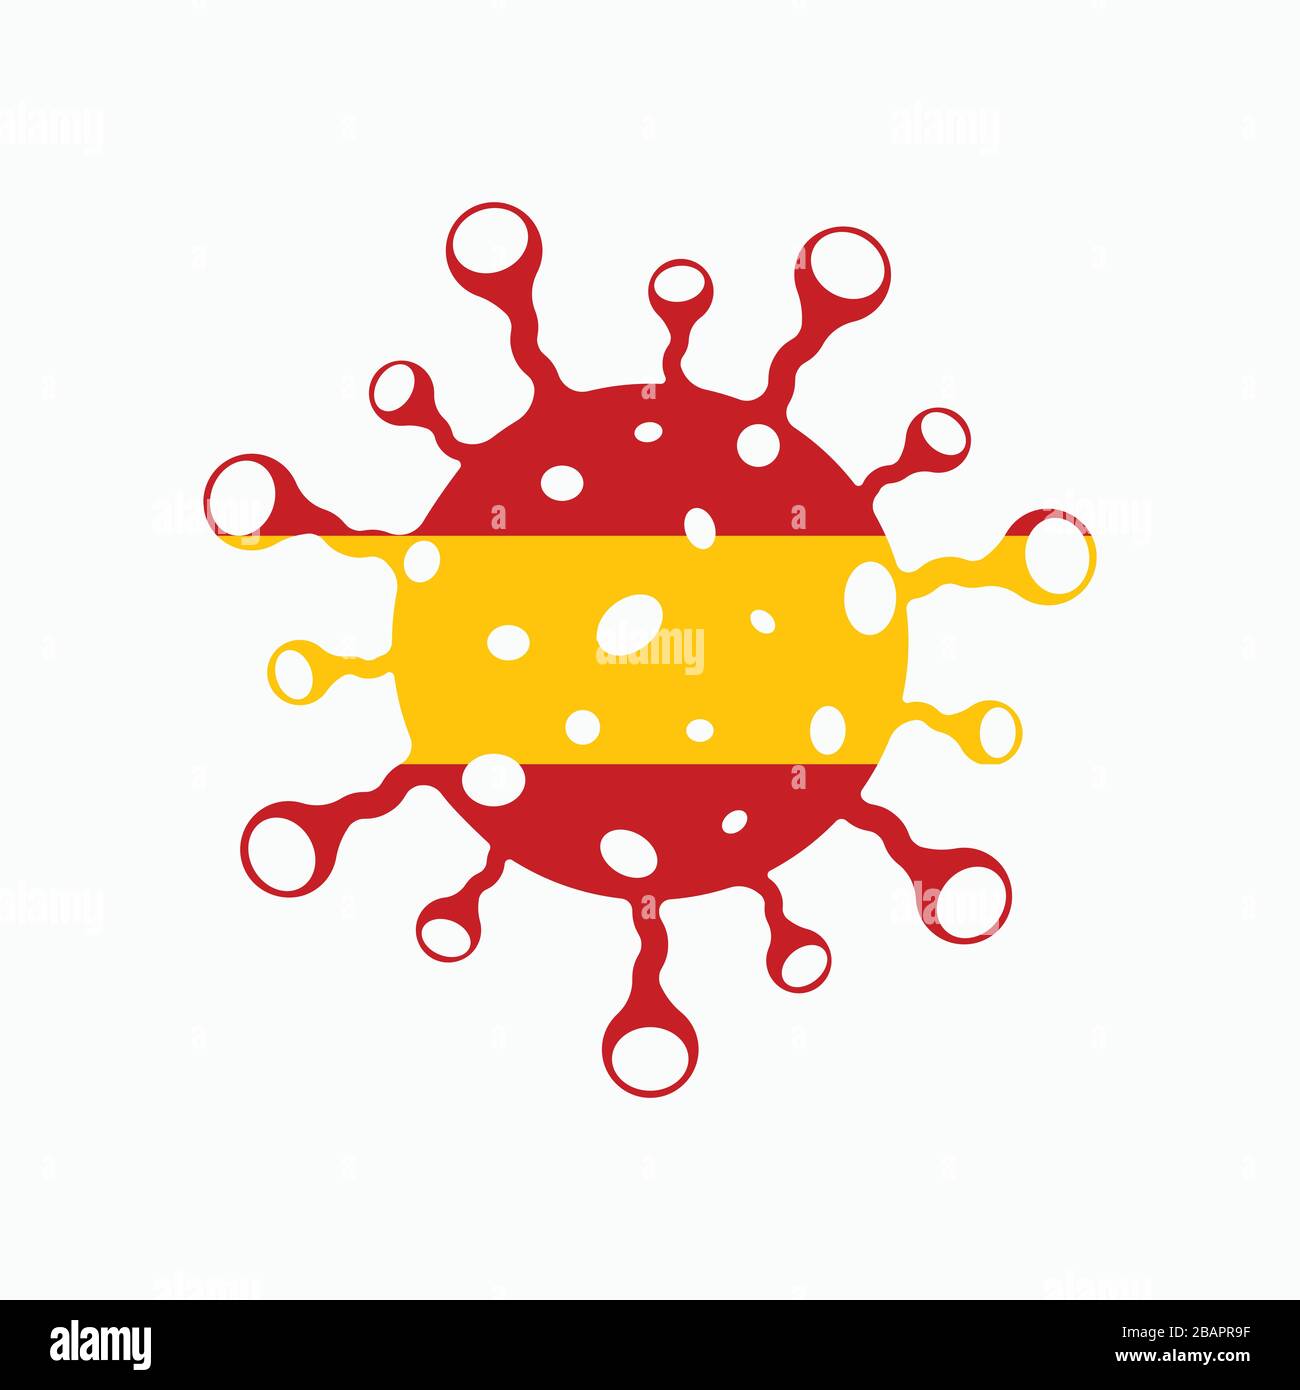 Malattia da coronavirus (COVID-19) Spagna bandiera consapevolezza sociale Vector Illustrazione. 2019-nCov / 2019 Novel Corona Virus Awareness Flag Design Vector Templ Illustrazione Vettoriale